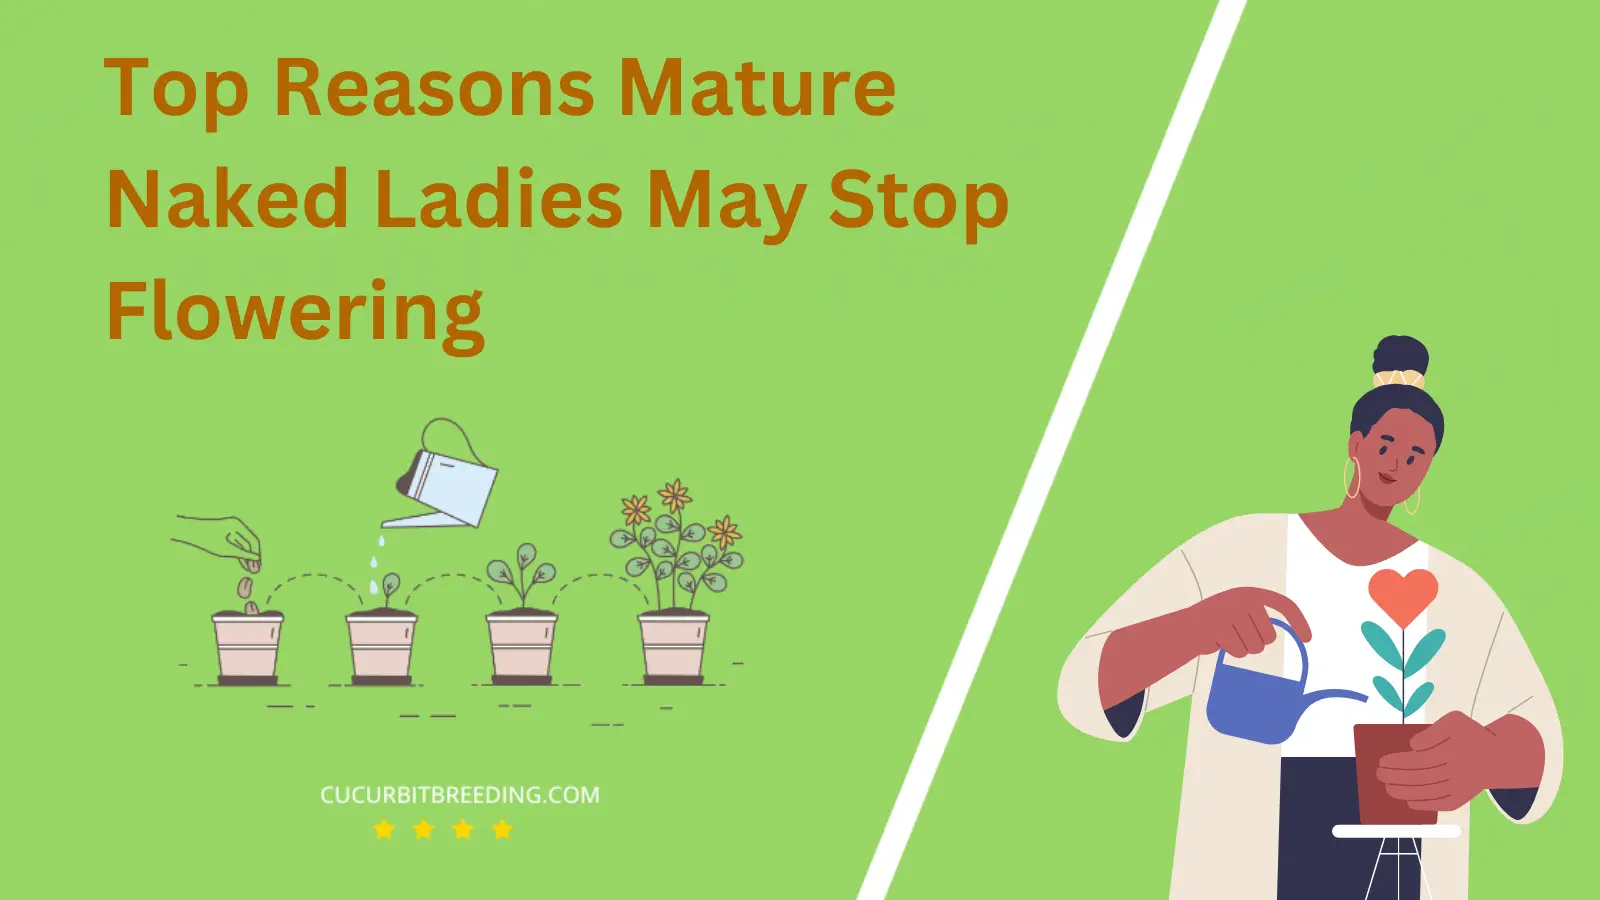 Top Reasons Mature Naked Ladies May Stop Flowering